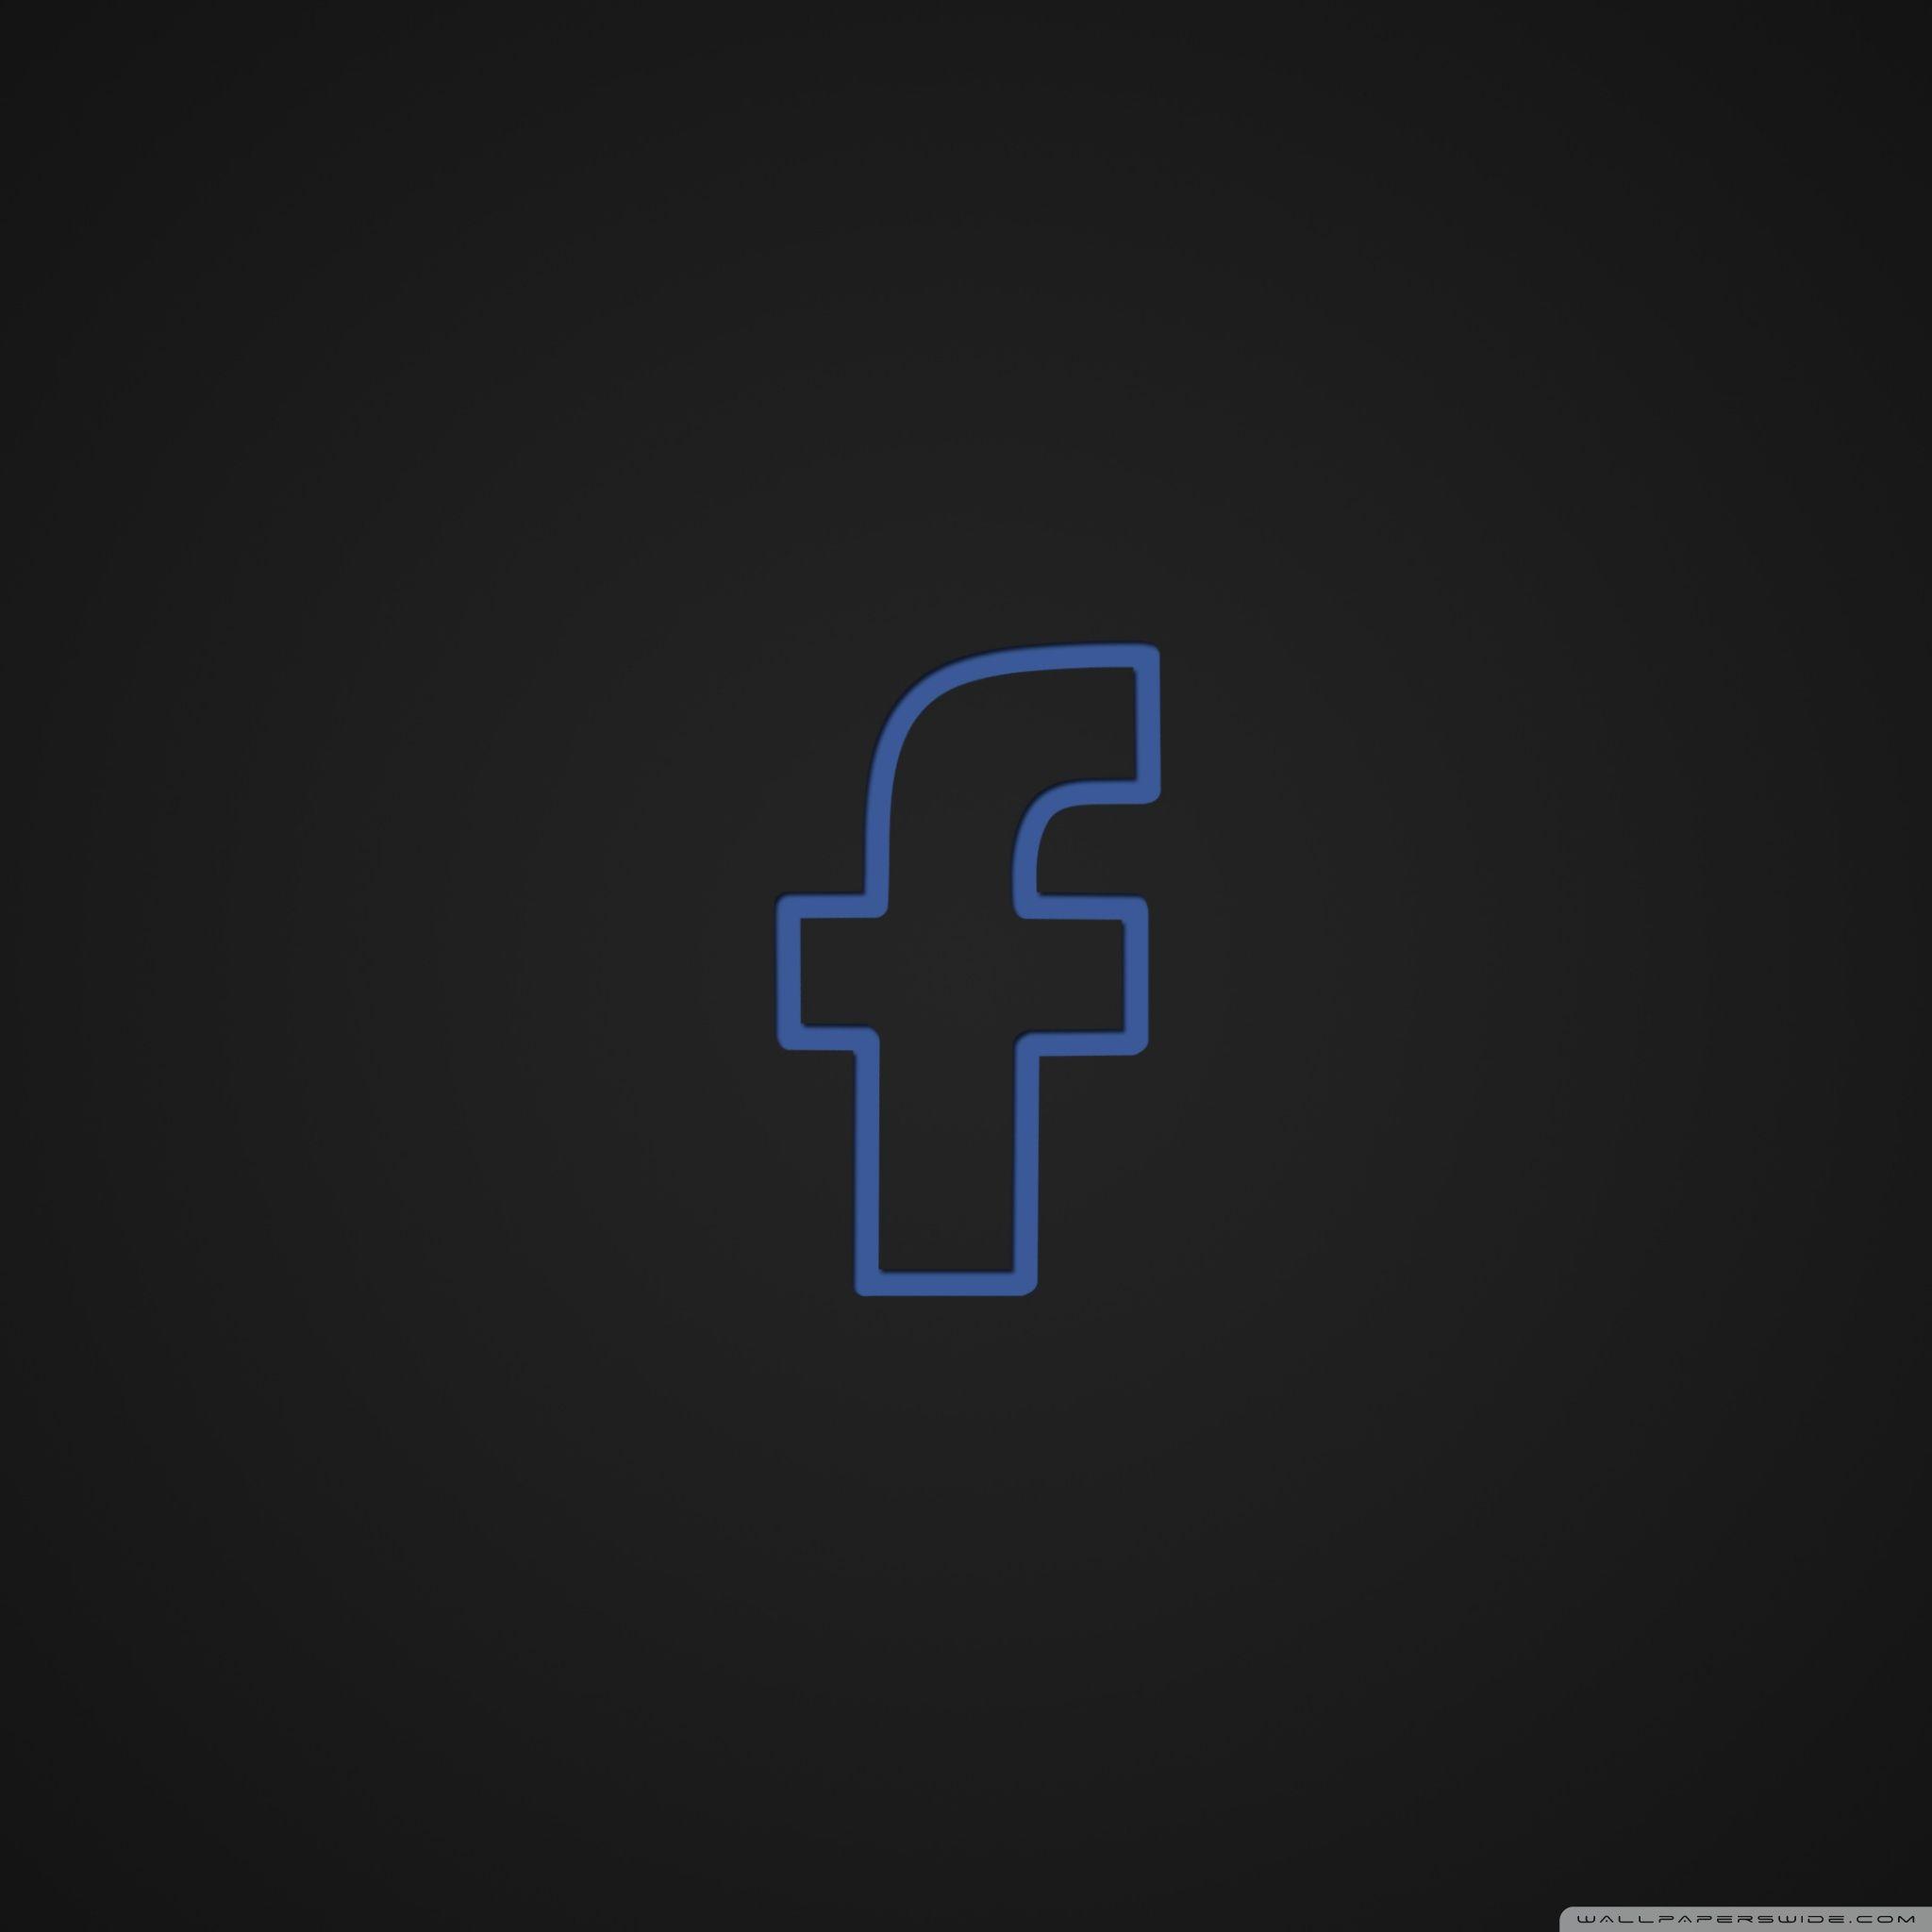 Facebook ❤ 4K HD Desktop Wallpaper for • Wide & Ultra Widescreen